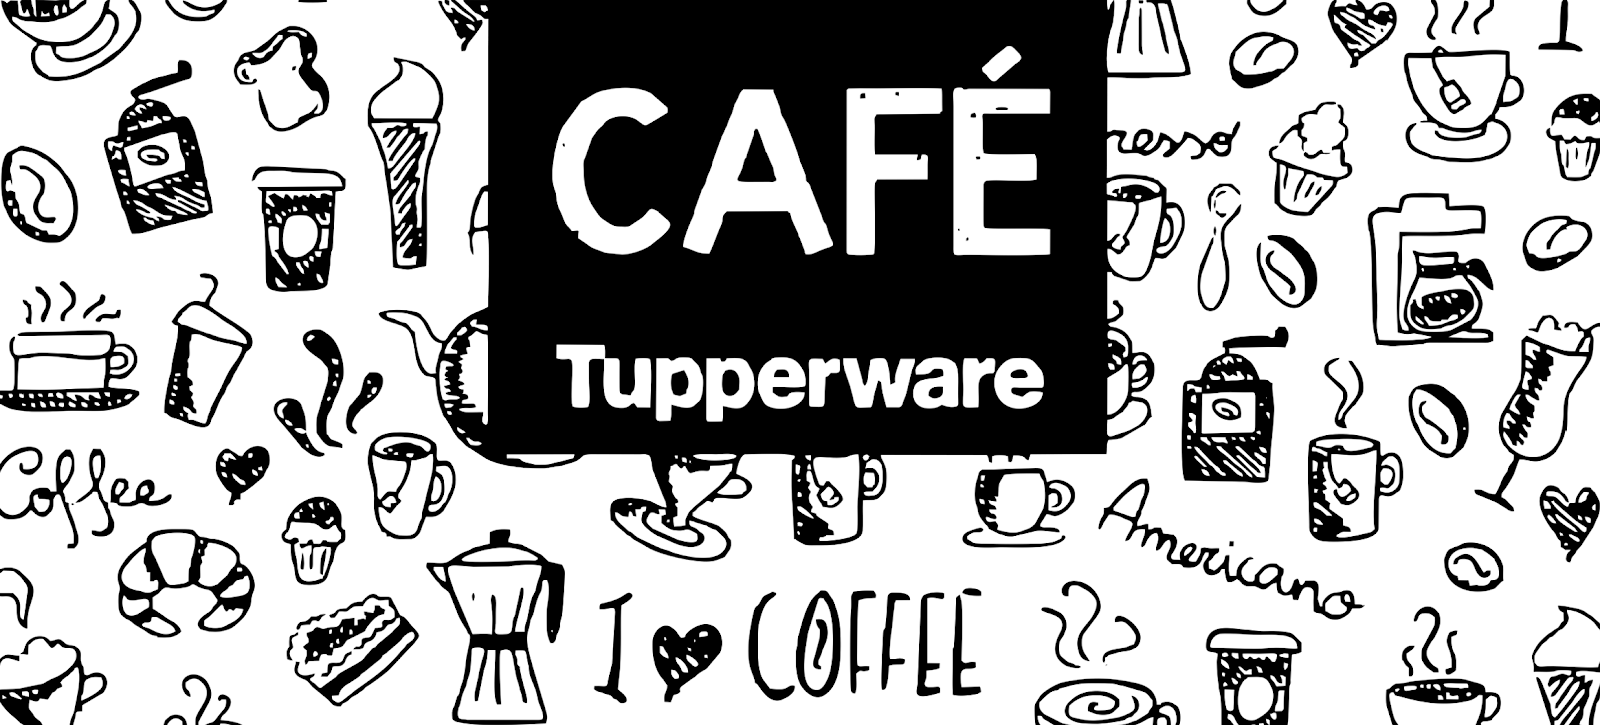 Arte café tupperware - Estampa Canecas com br.png